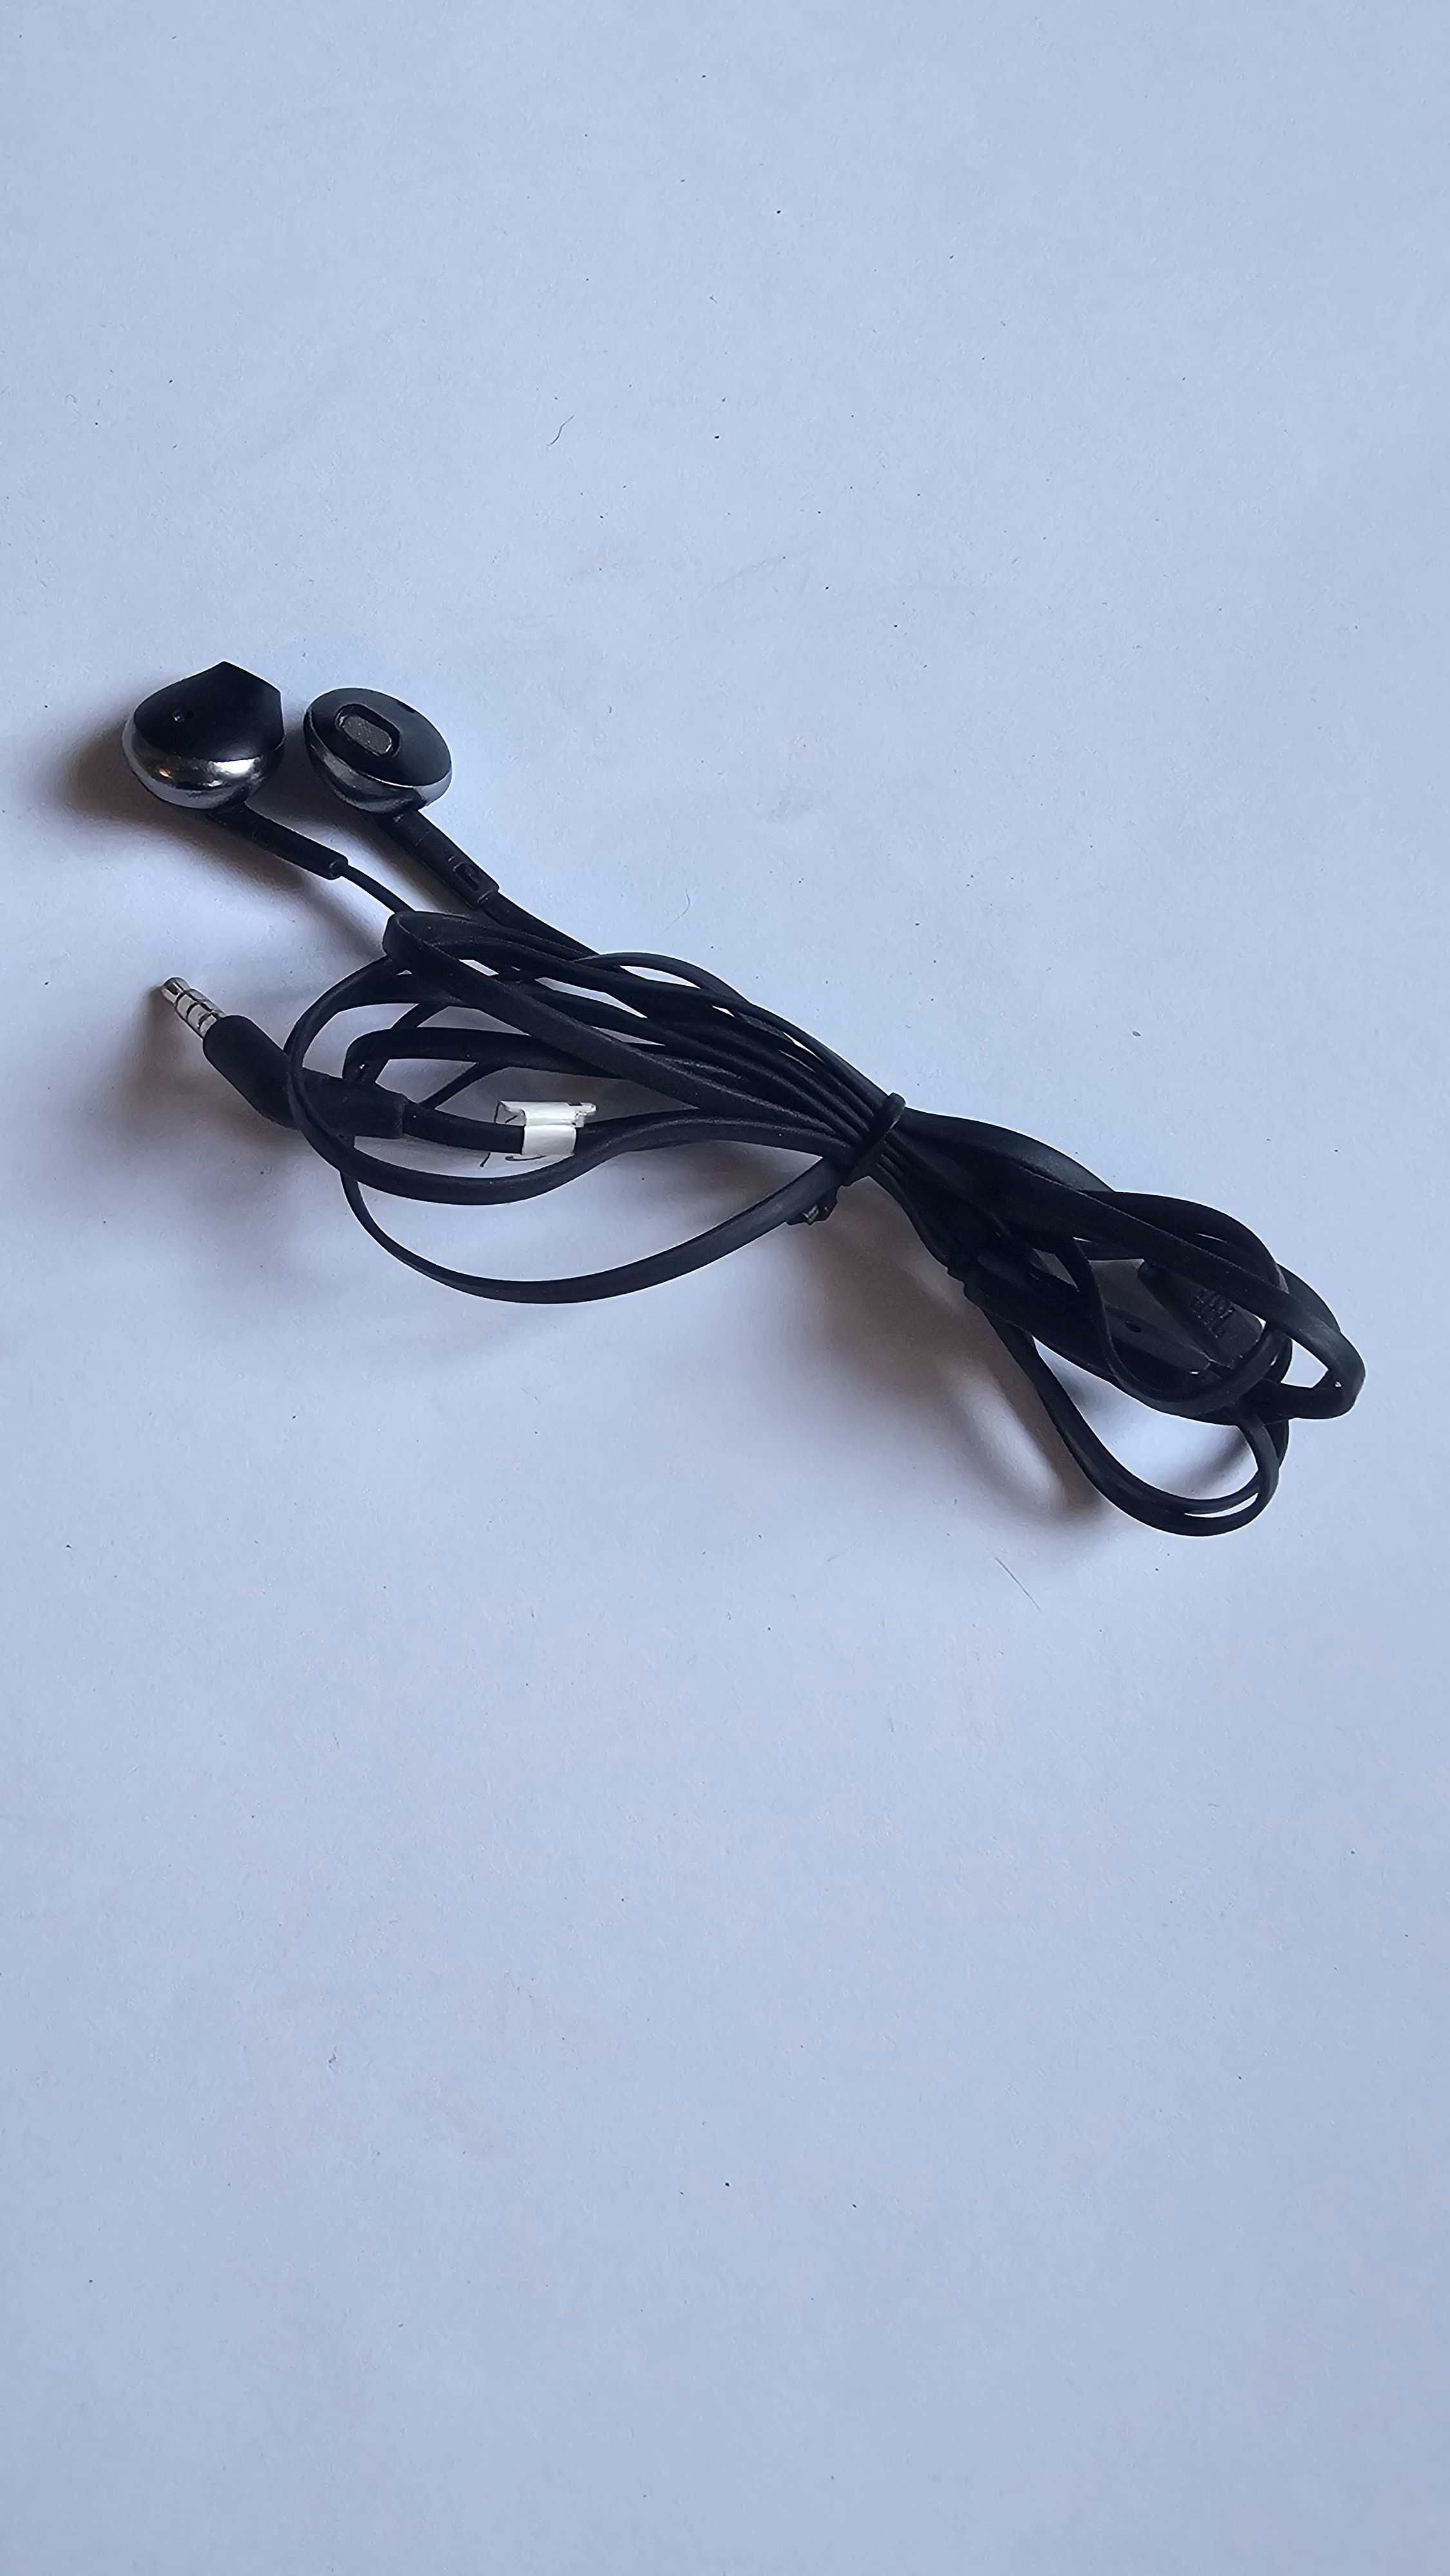 Słuchawki przewodowe douszne mini jack 3,5mm JBL sprawne tylko 1 ucho